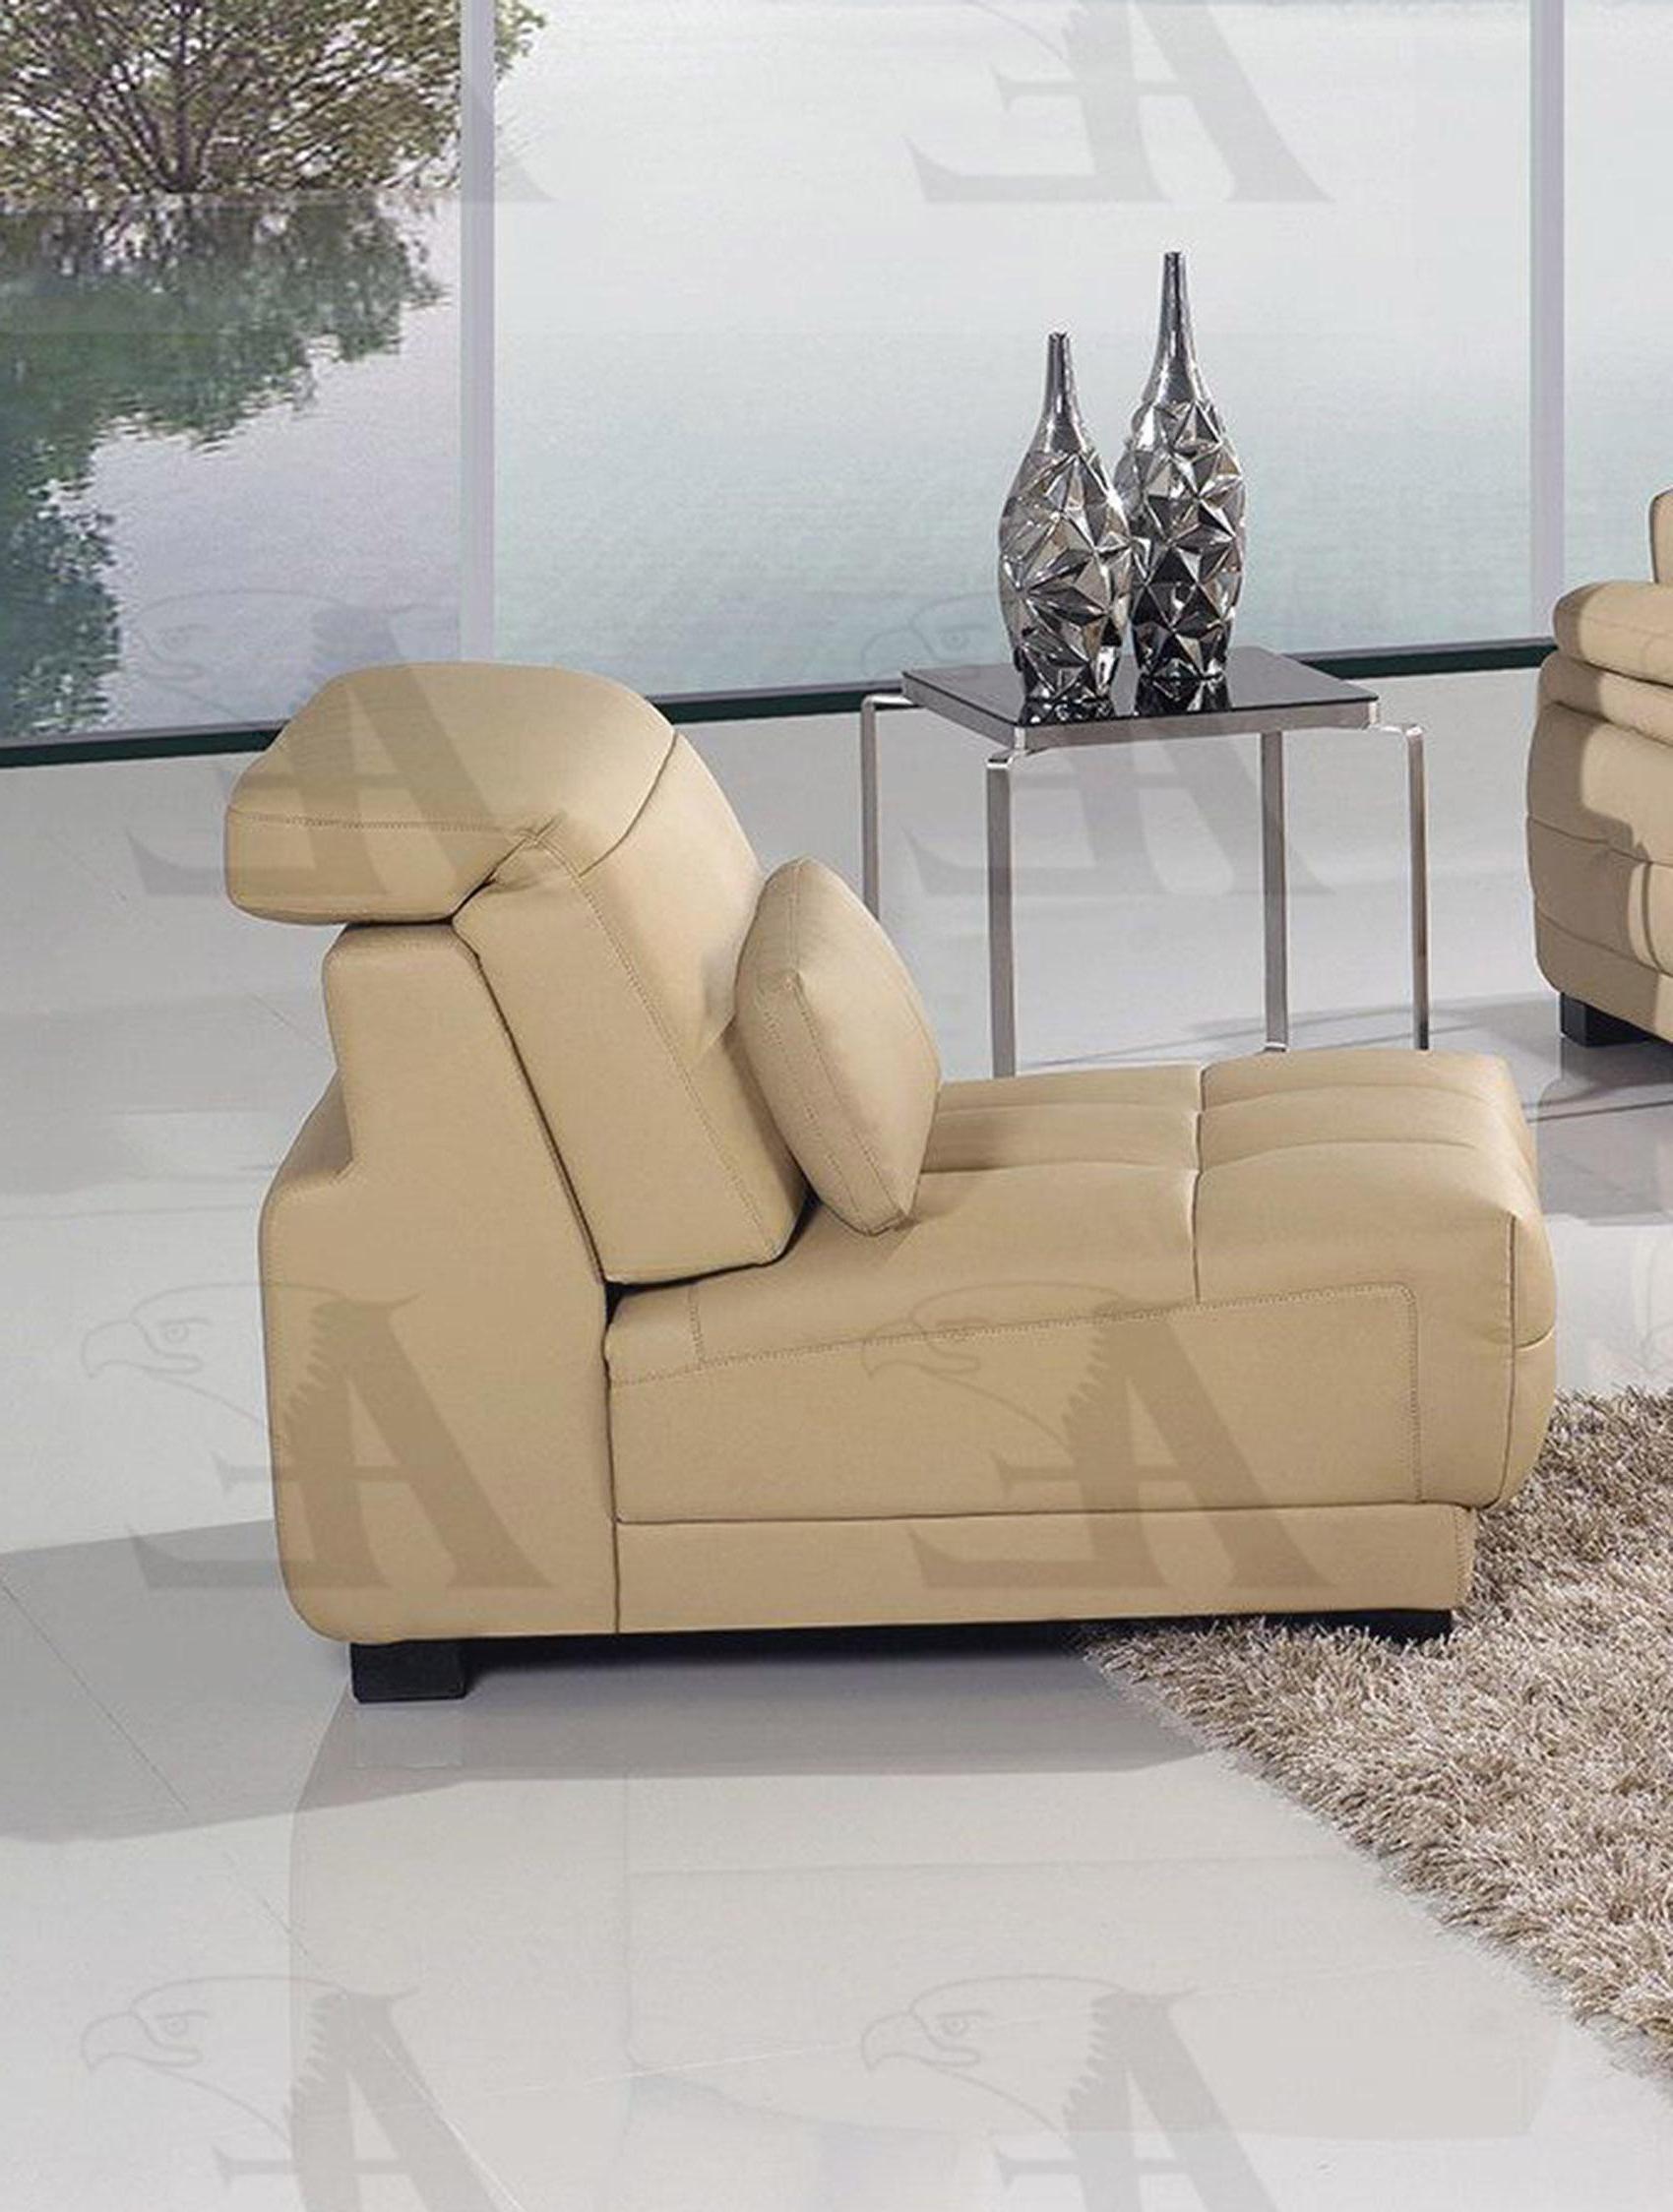 

    
AE-L296-CA Set-4 RHC American Eagle Furniture Sofa Chaise Chair and Ottoman Set
